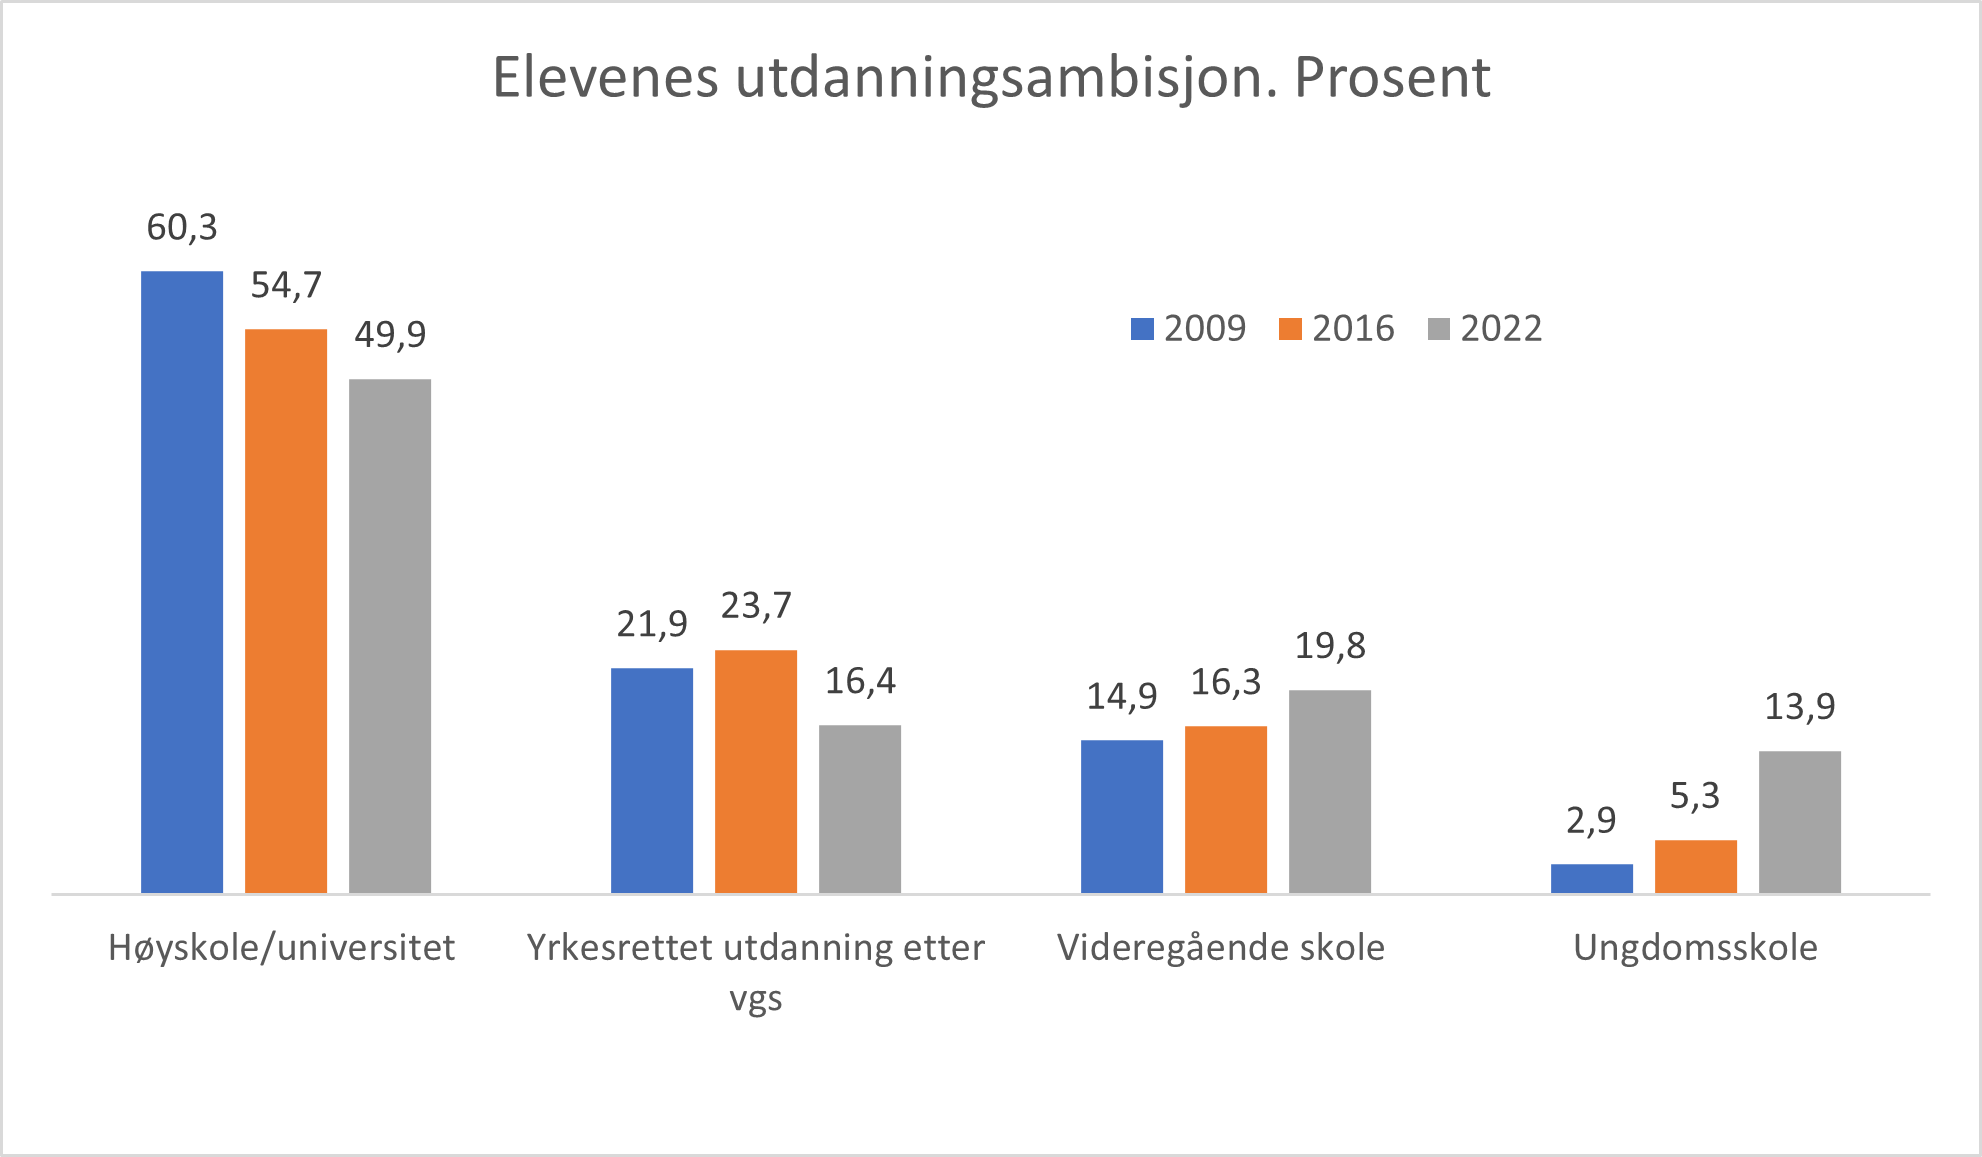 Søylediagram viser elevenes utdanningsambisjon for årene 2009, 2016 og 2022